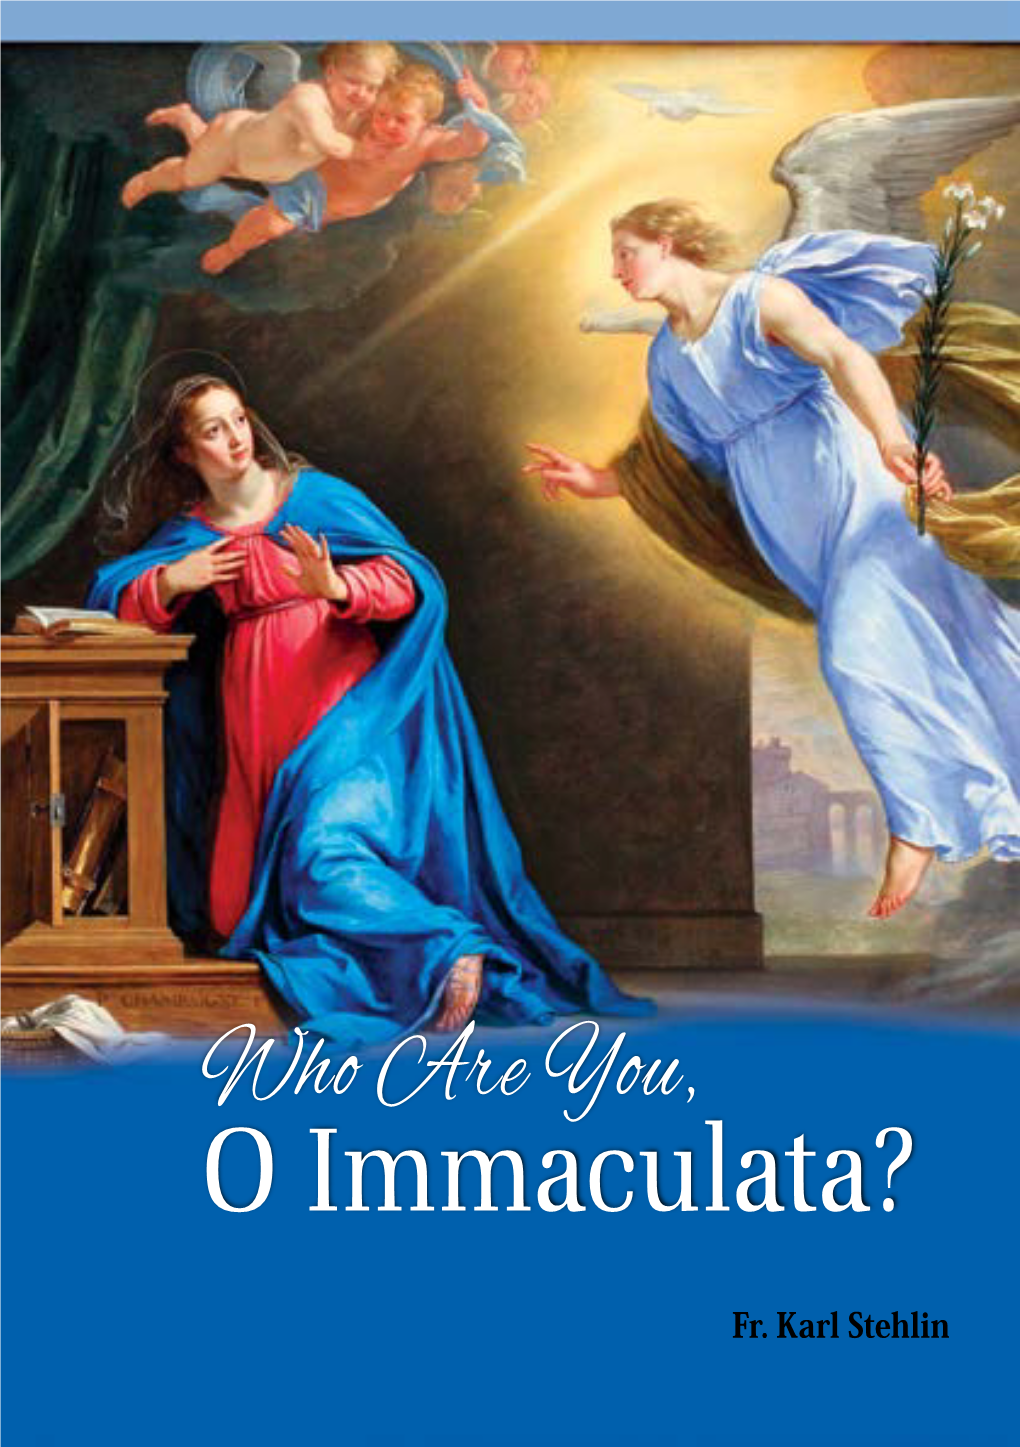 O Immaculata?